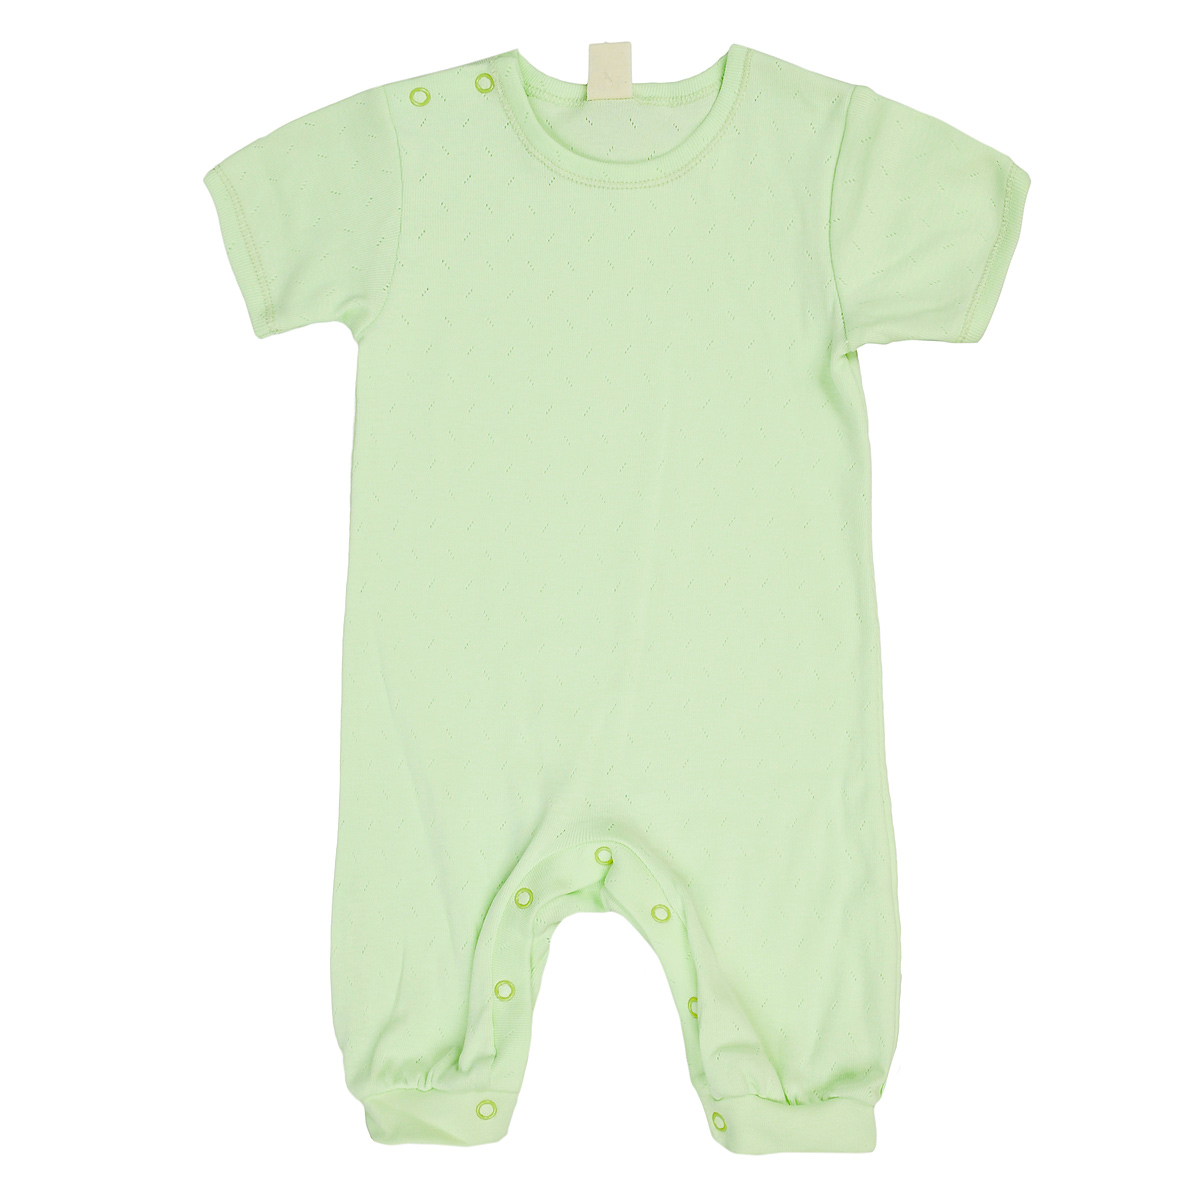 Песочник детский Lucky Child, цвет: светло-зеленый. 0-28. Размер 80/86